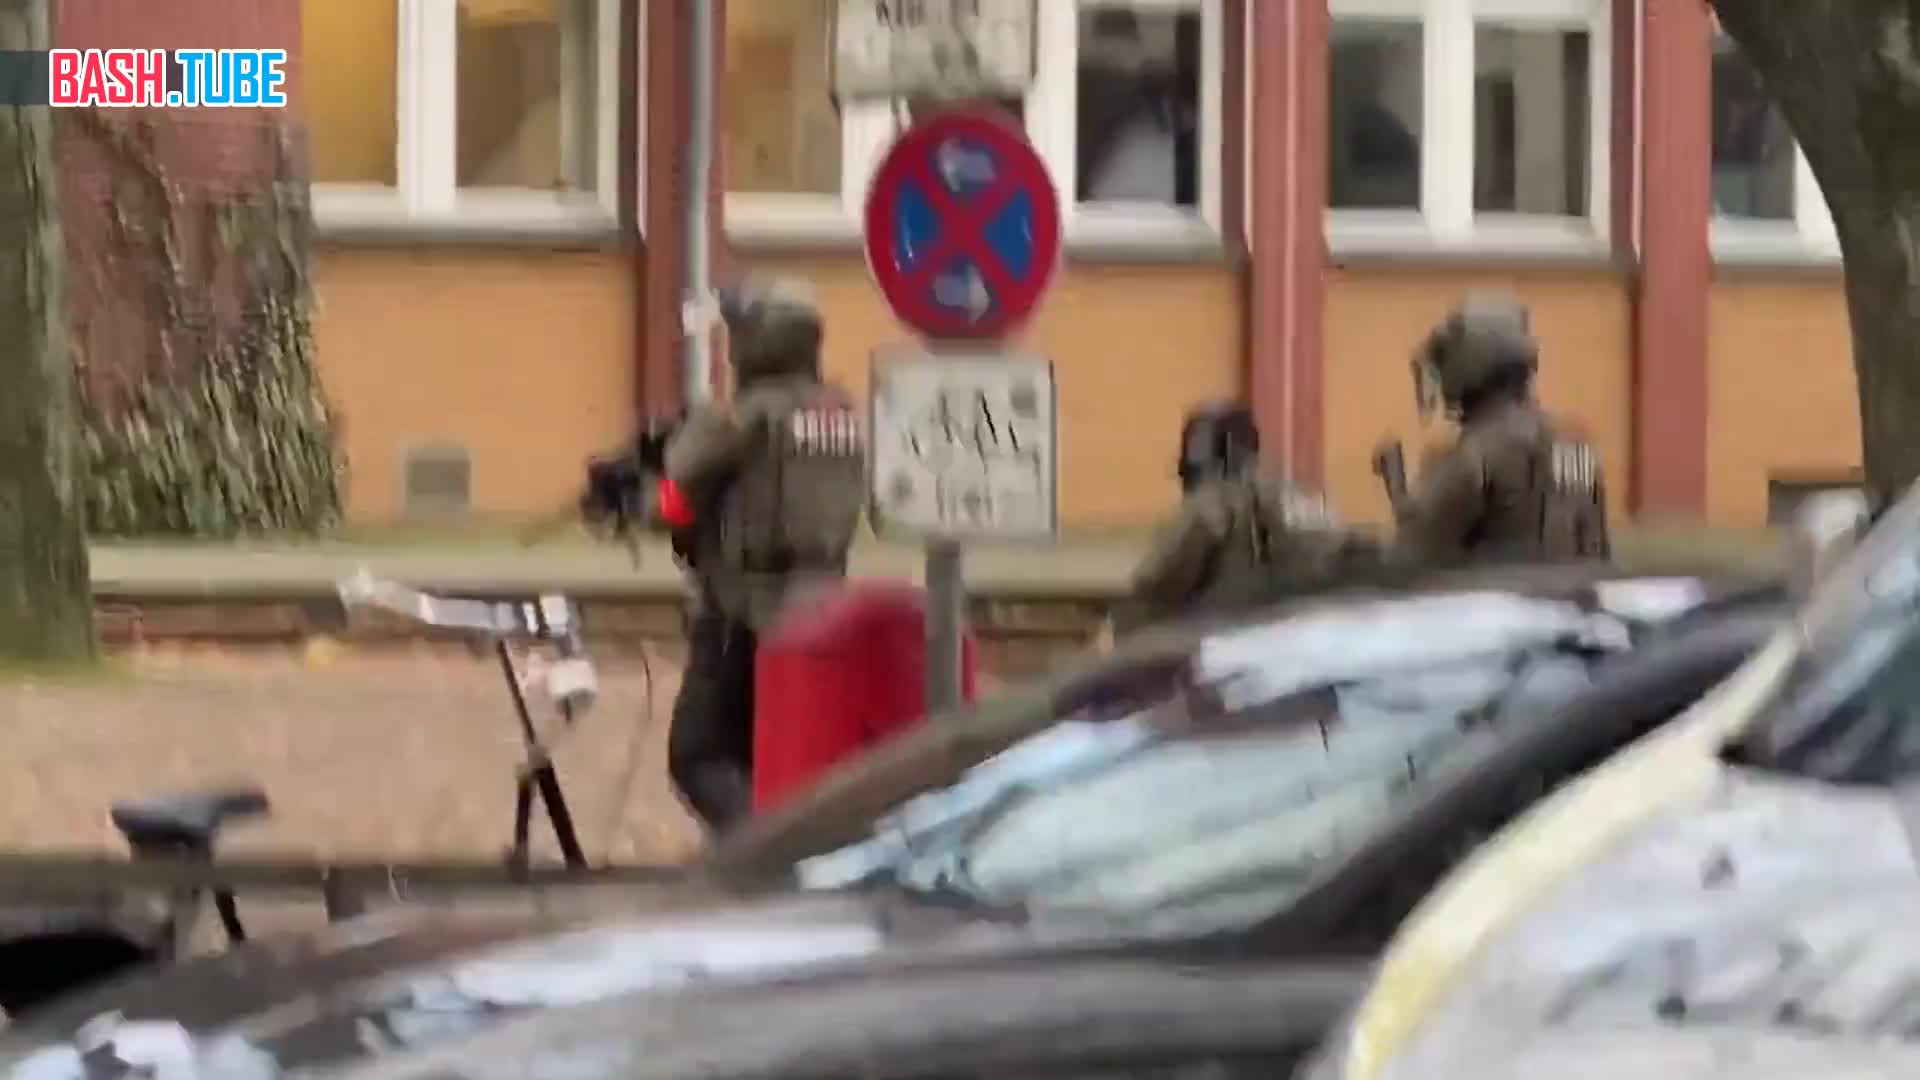  Двое мужчин с огнестрельным оружием захватили школу в Гамбурге, сообщает Bild